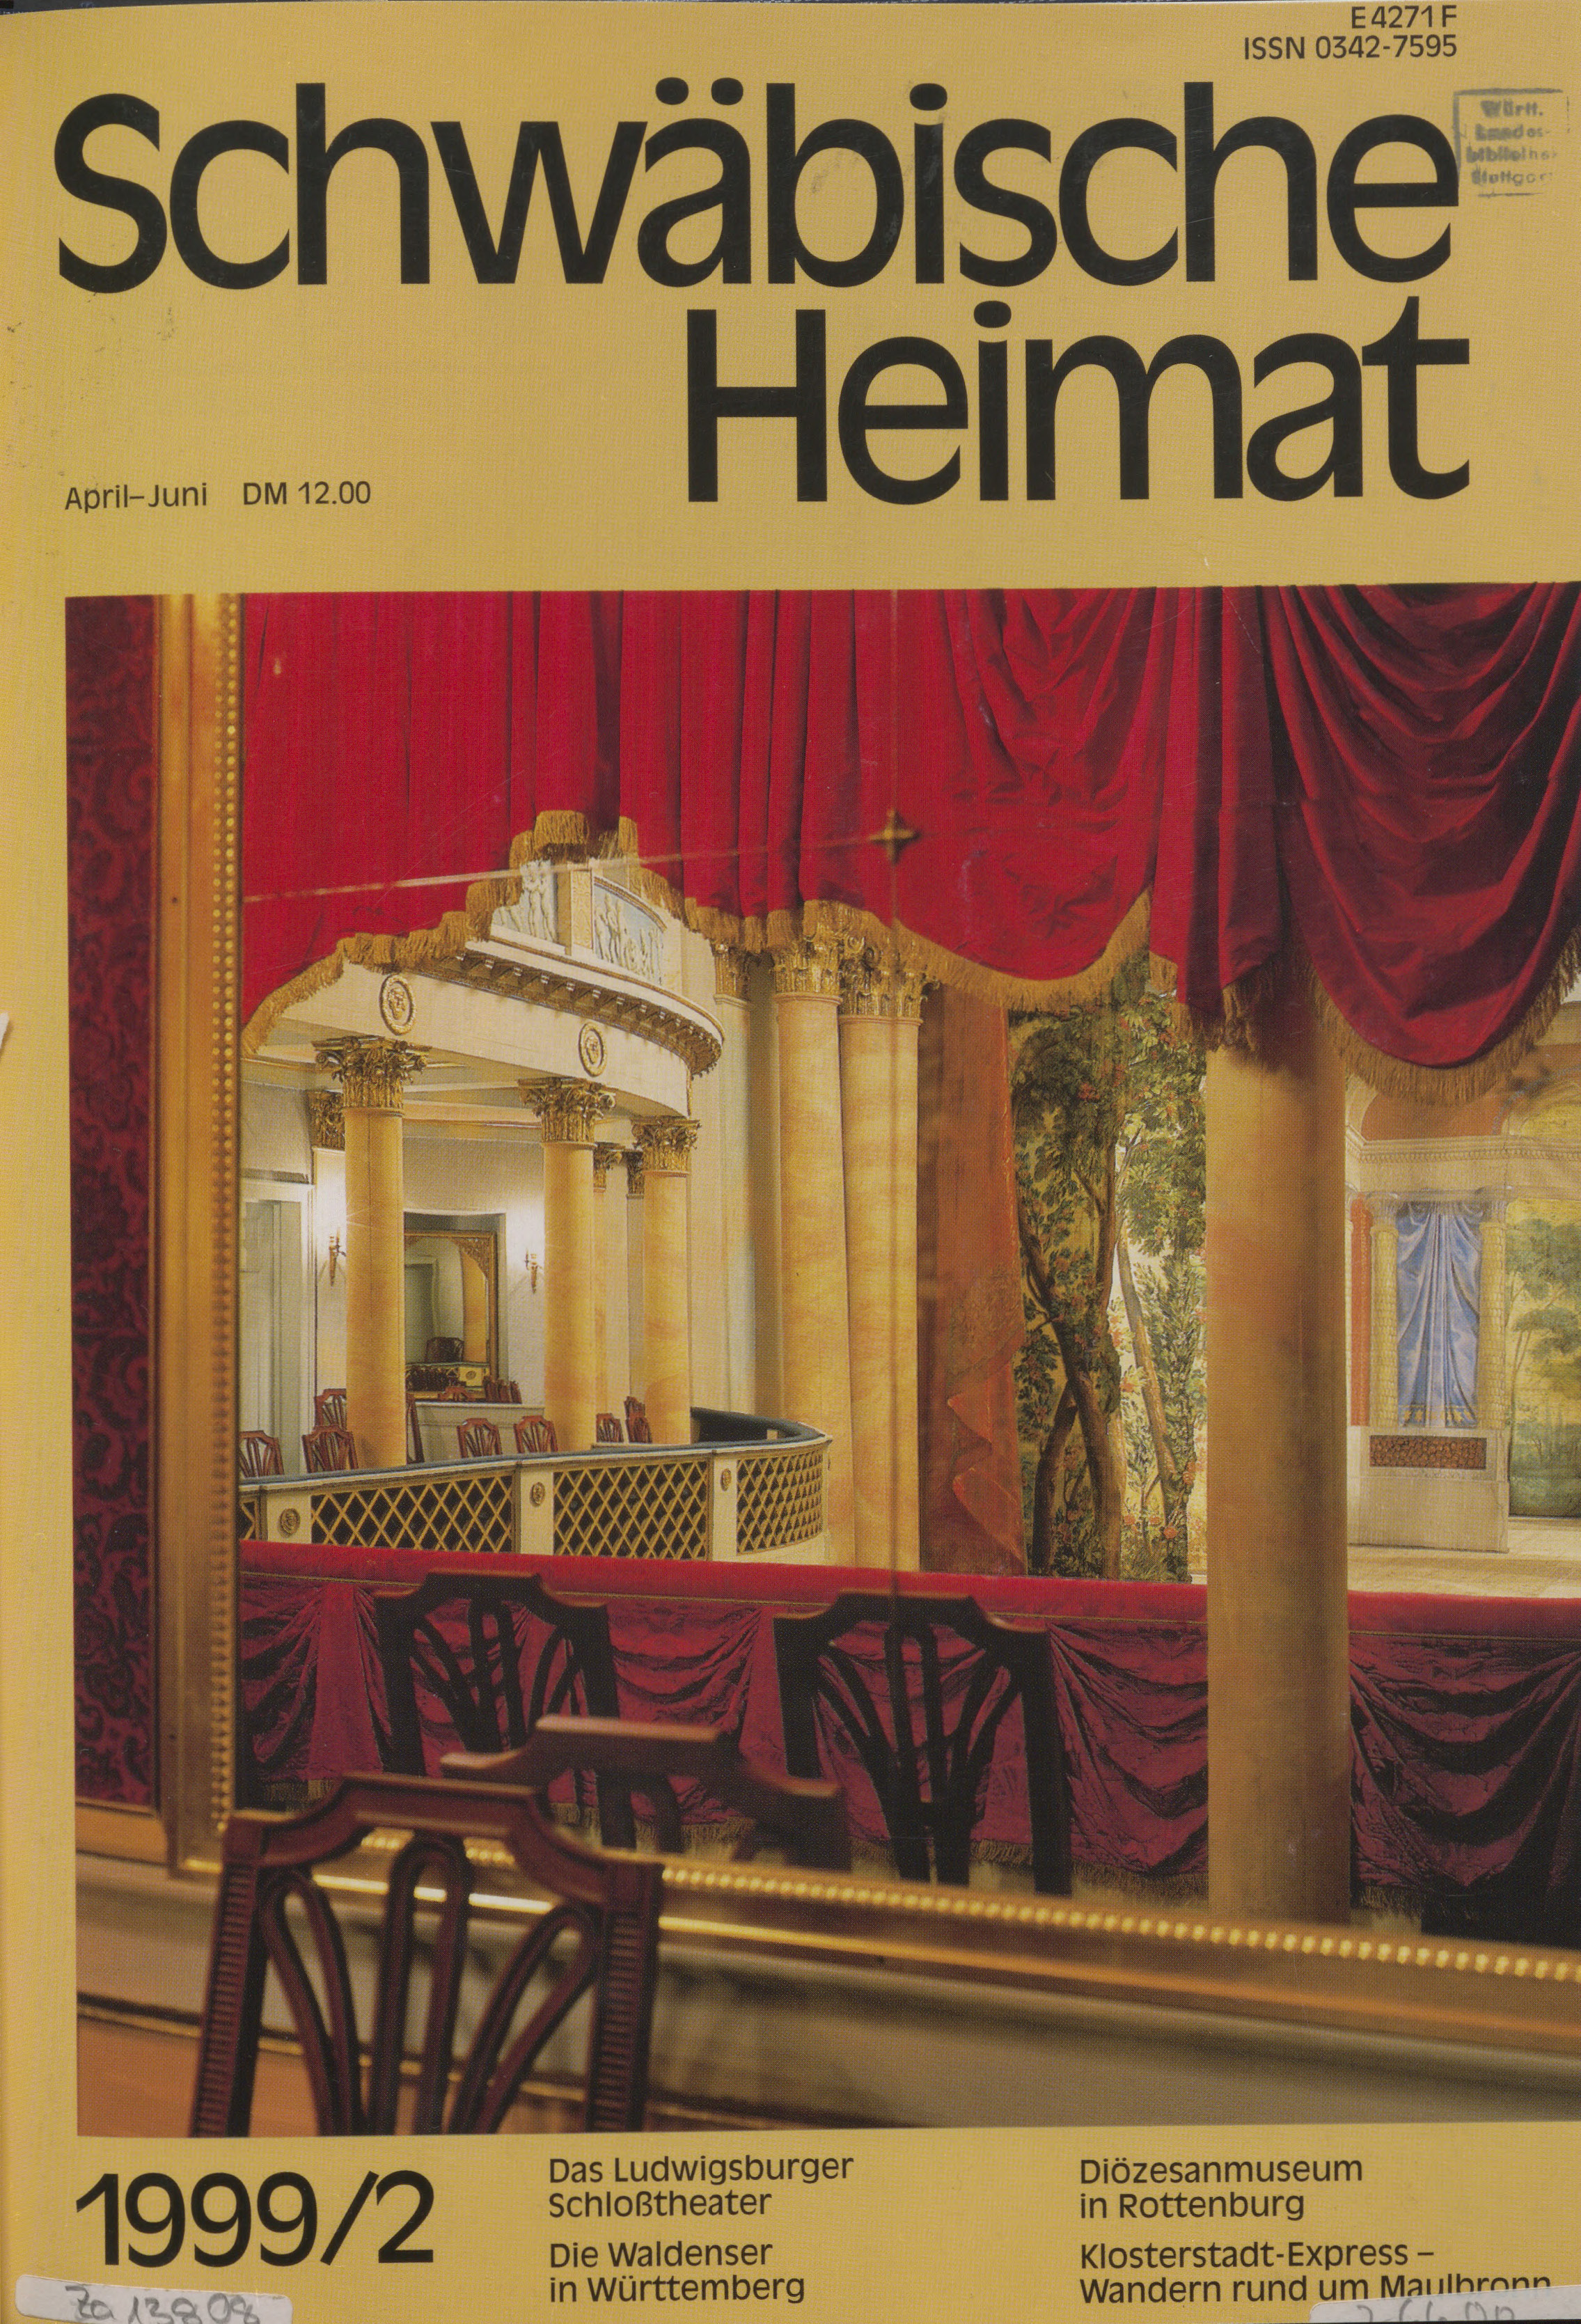                     Ansehen Bd. 50 Nr. 2 (1999): Schwäbische Heimat
                